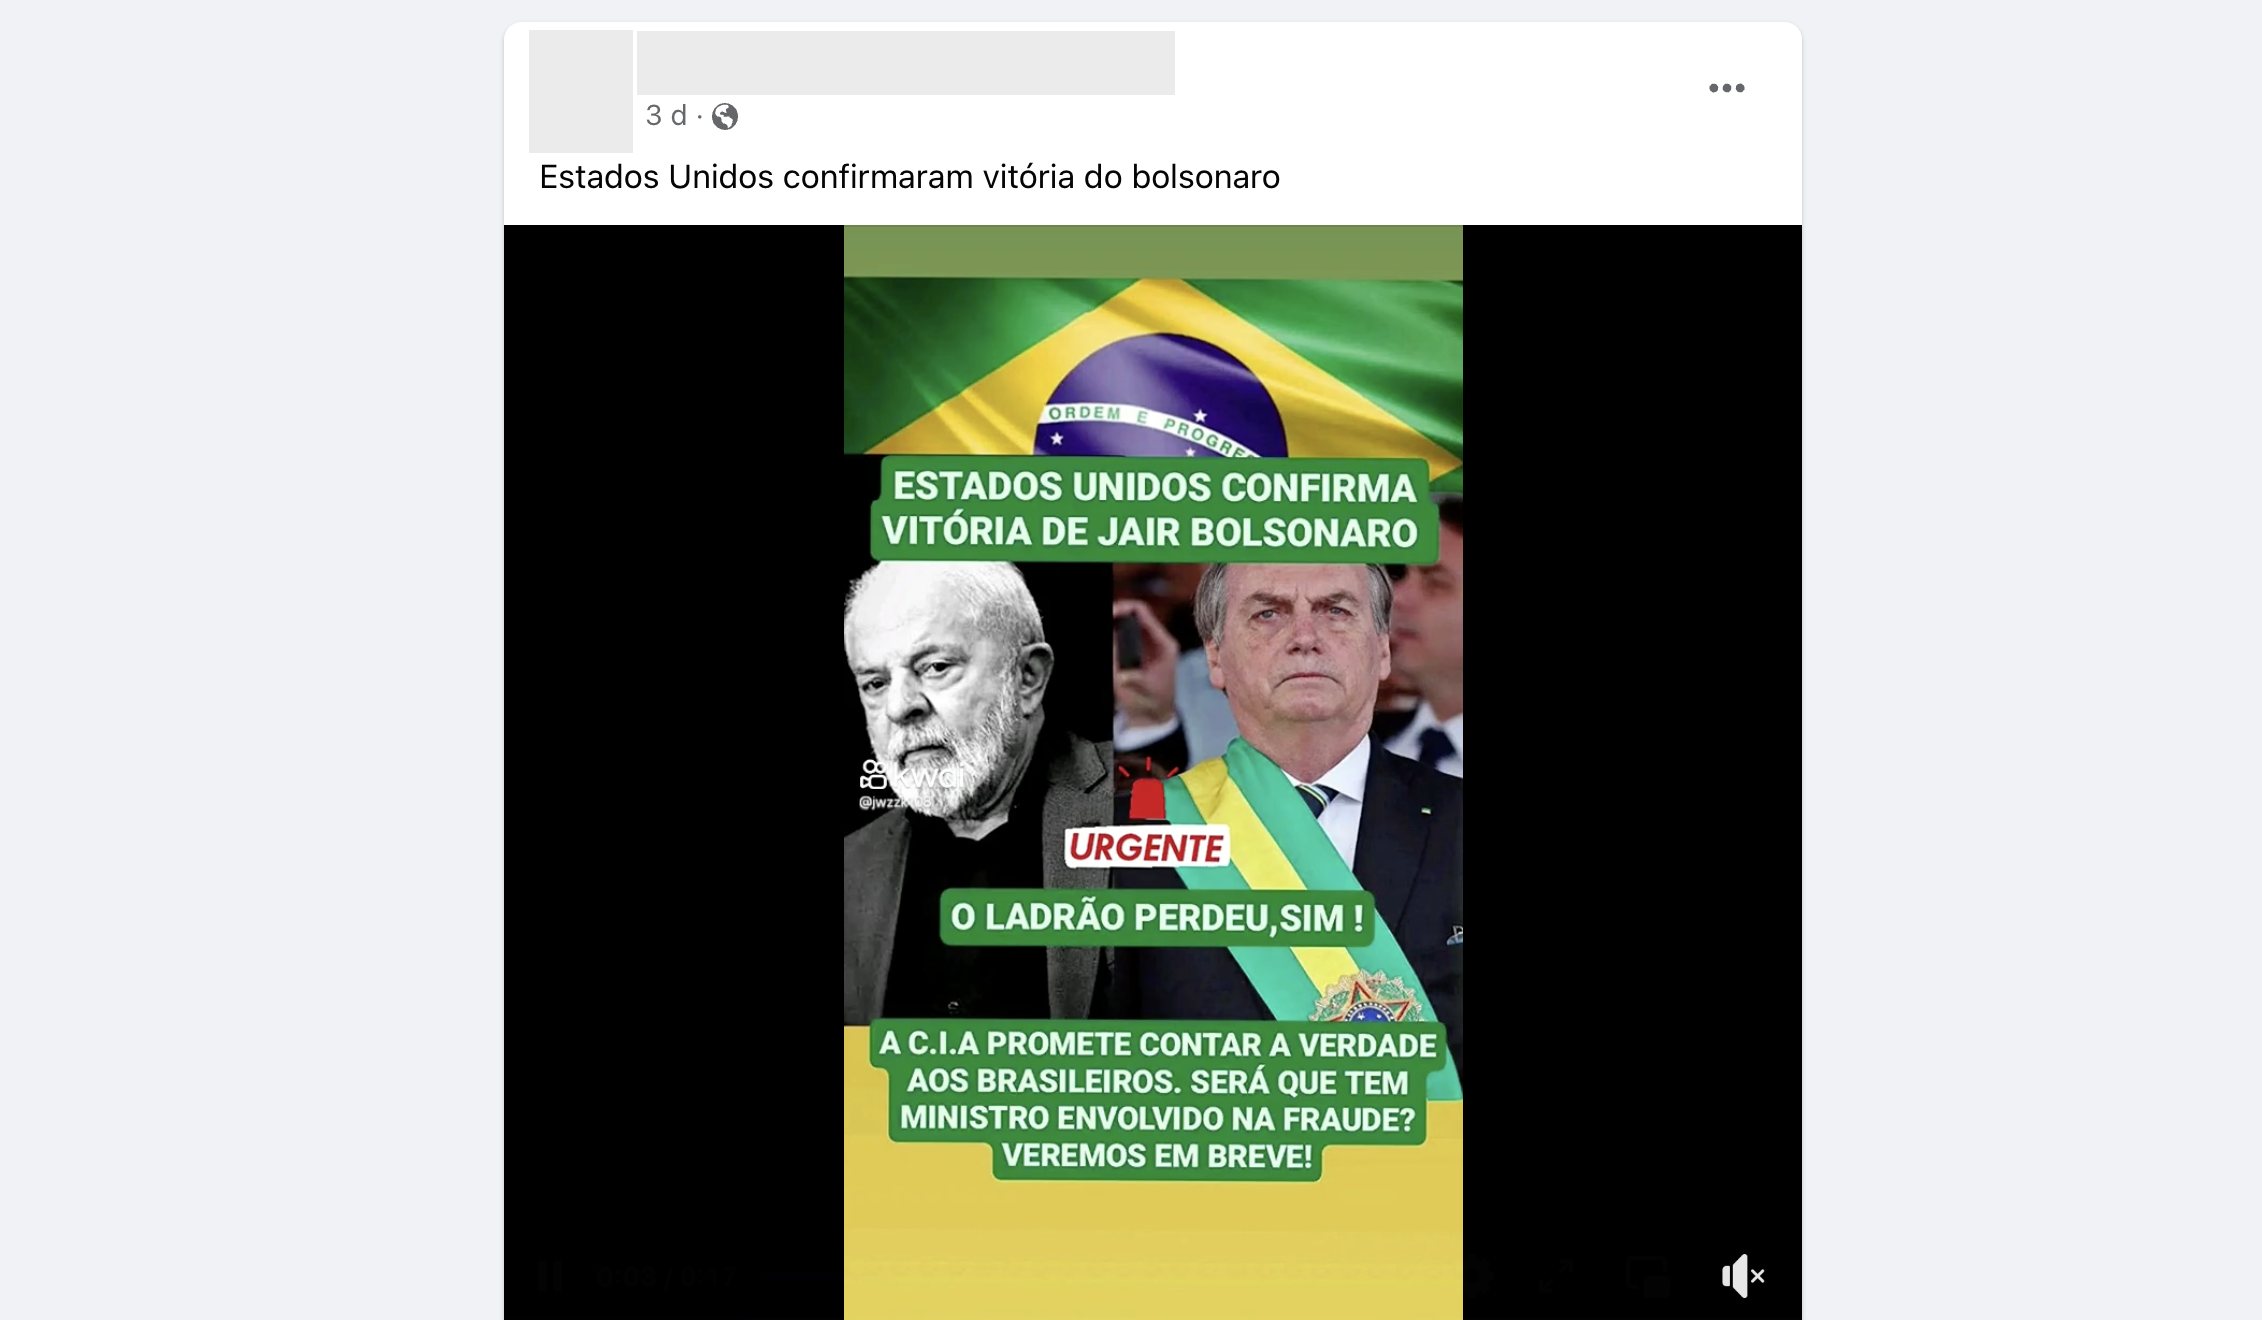 A teoria dos jogos explica a vitória de Jair Bolsonaro em 2018?